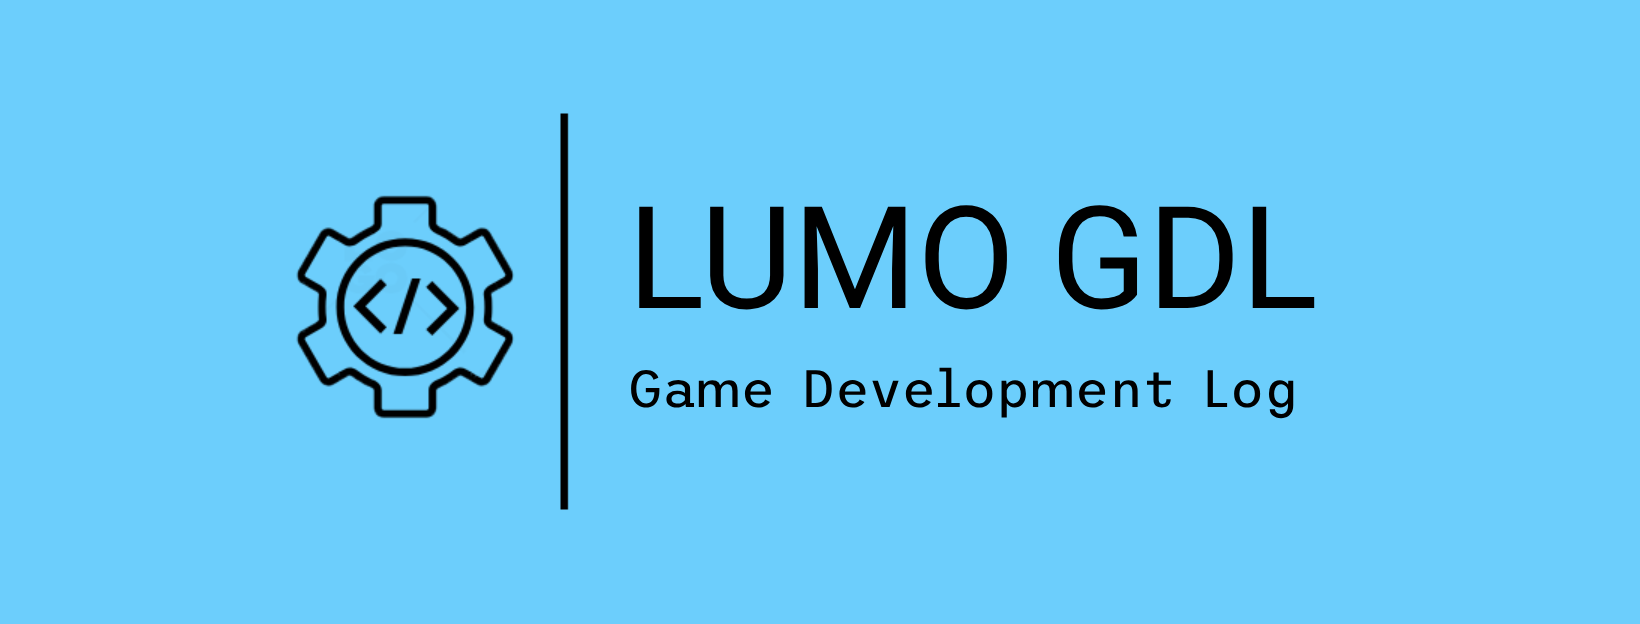 Lumo GDL Image